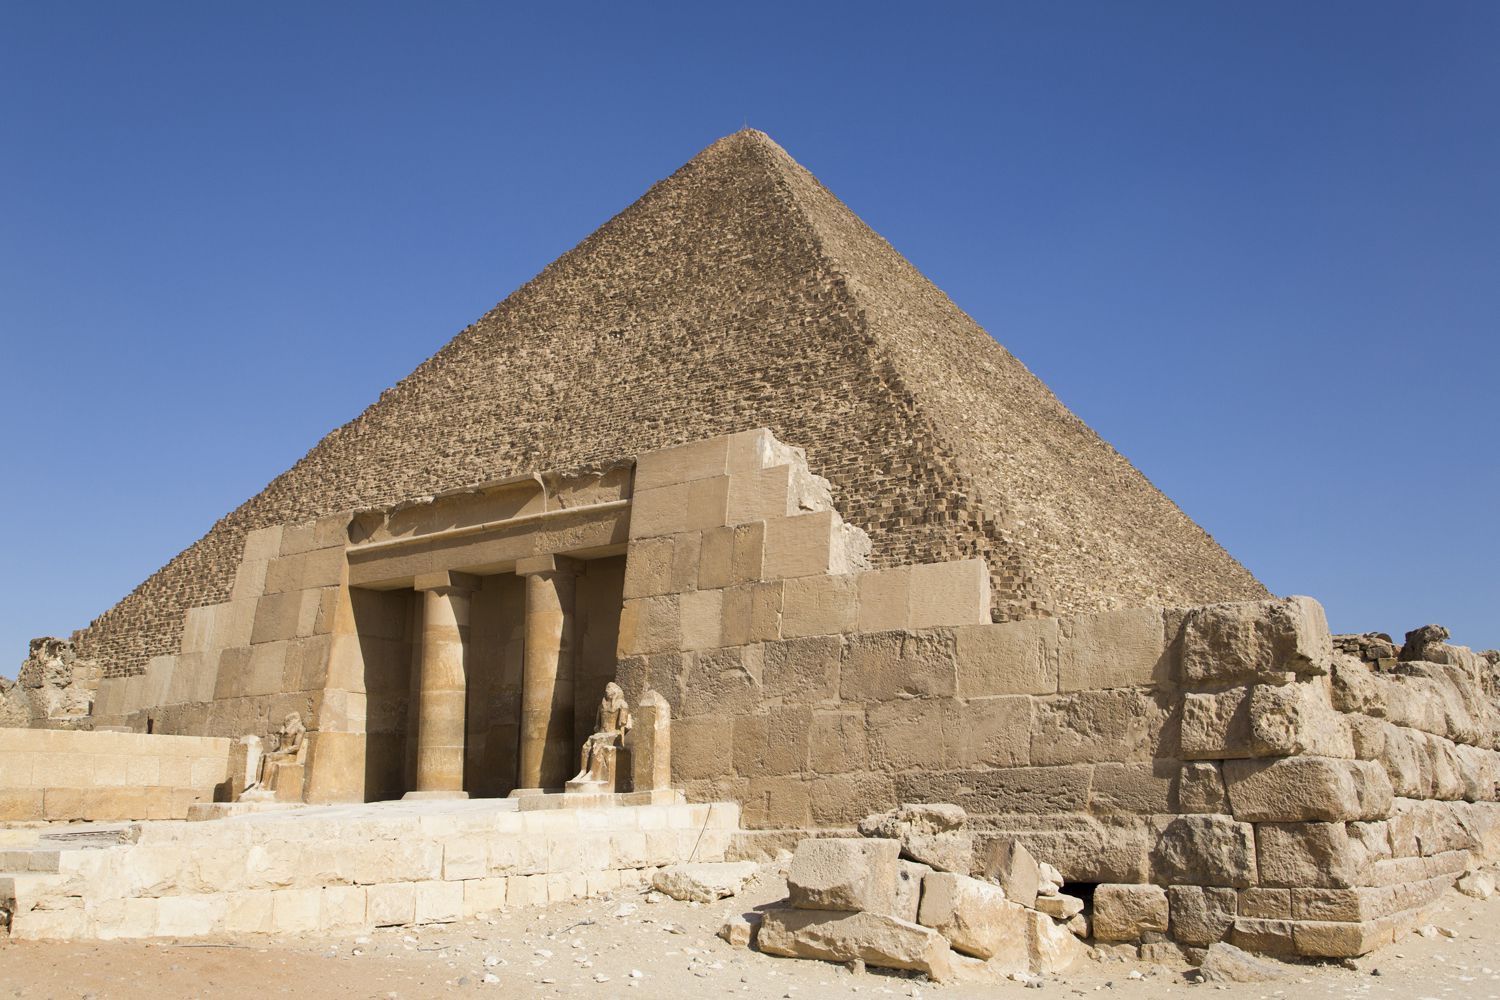 Древний египет: искусство и архитектура